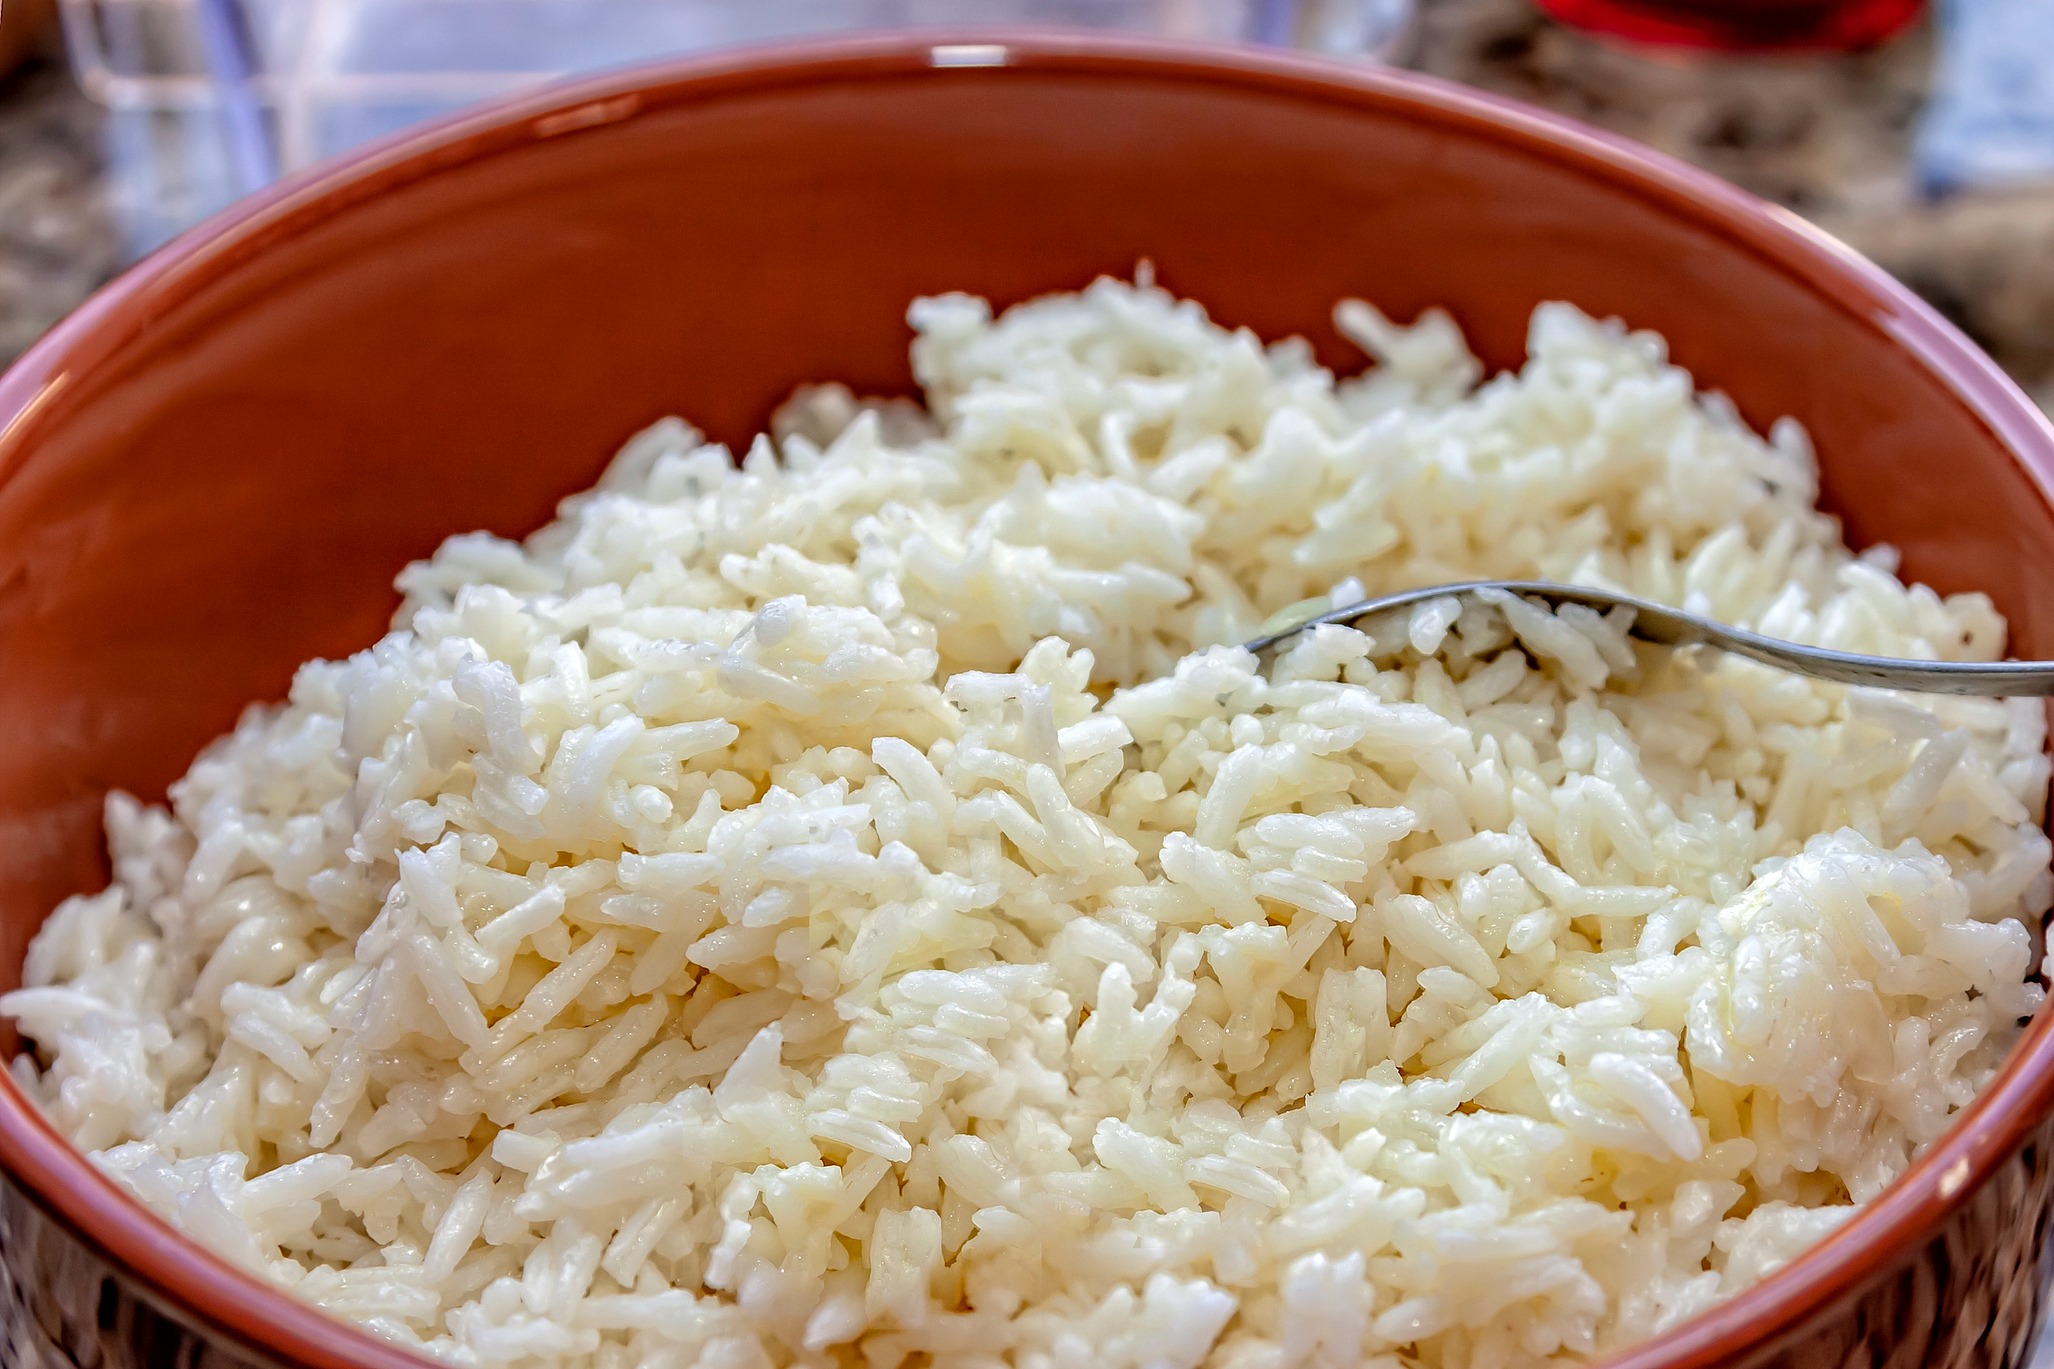 Leclerc rappelle dans la France entière du riz basmati pouvant